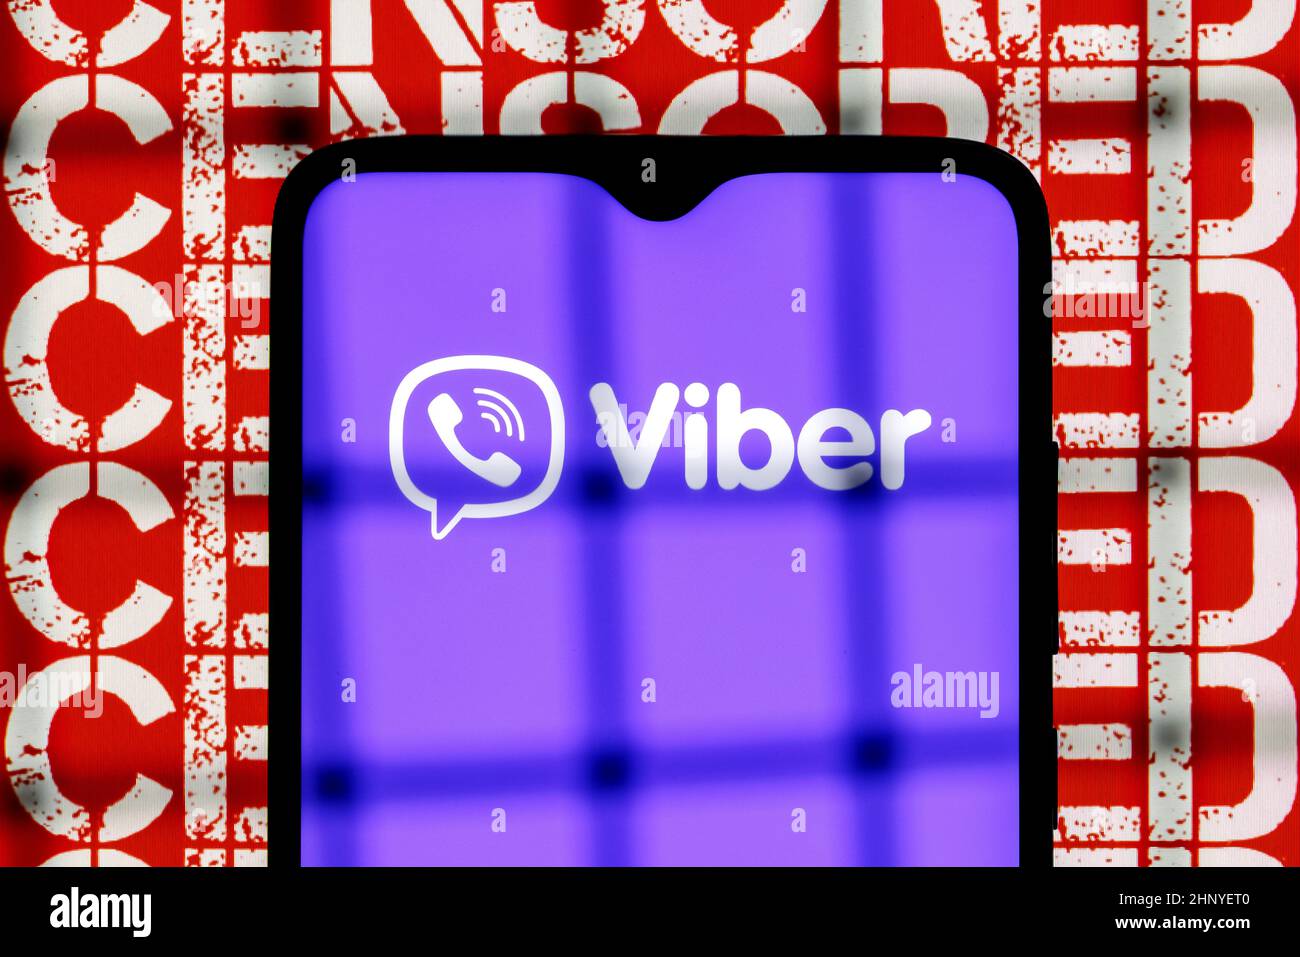 Viber servicio de mensajería instantánea logotipo en la pantalla del smartphone detrás de las barras en el fondo con inscripción censurada Foto de stock